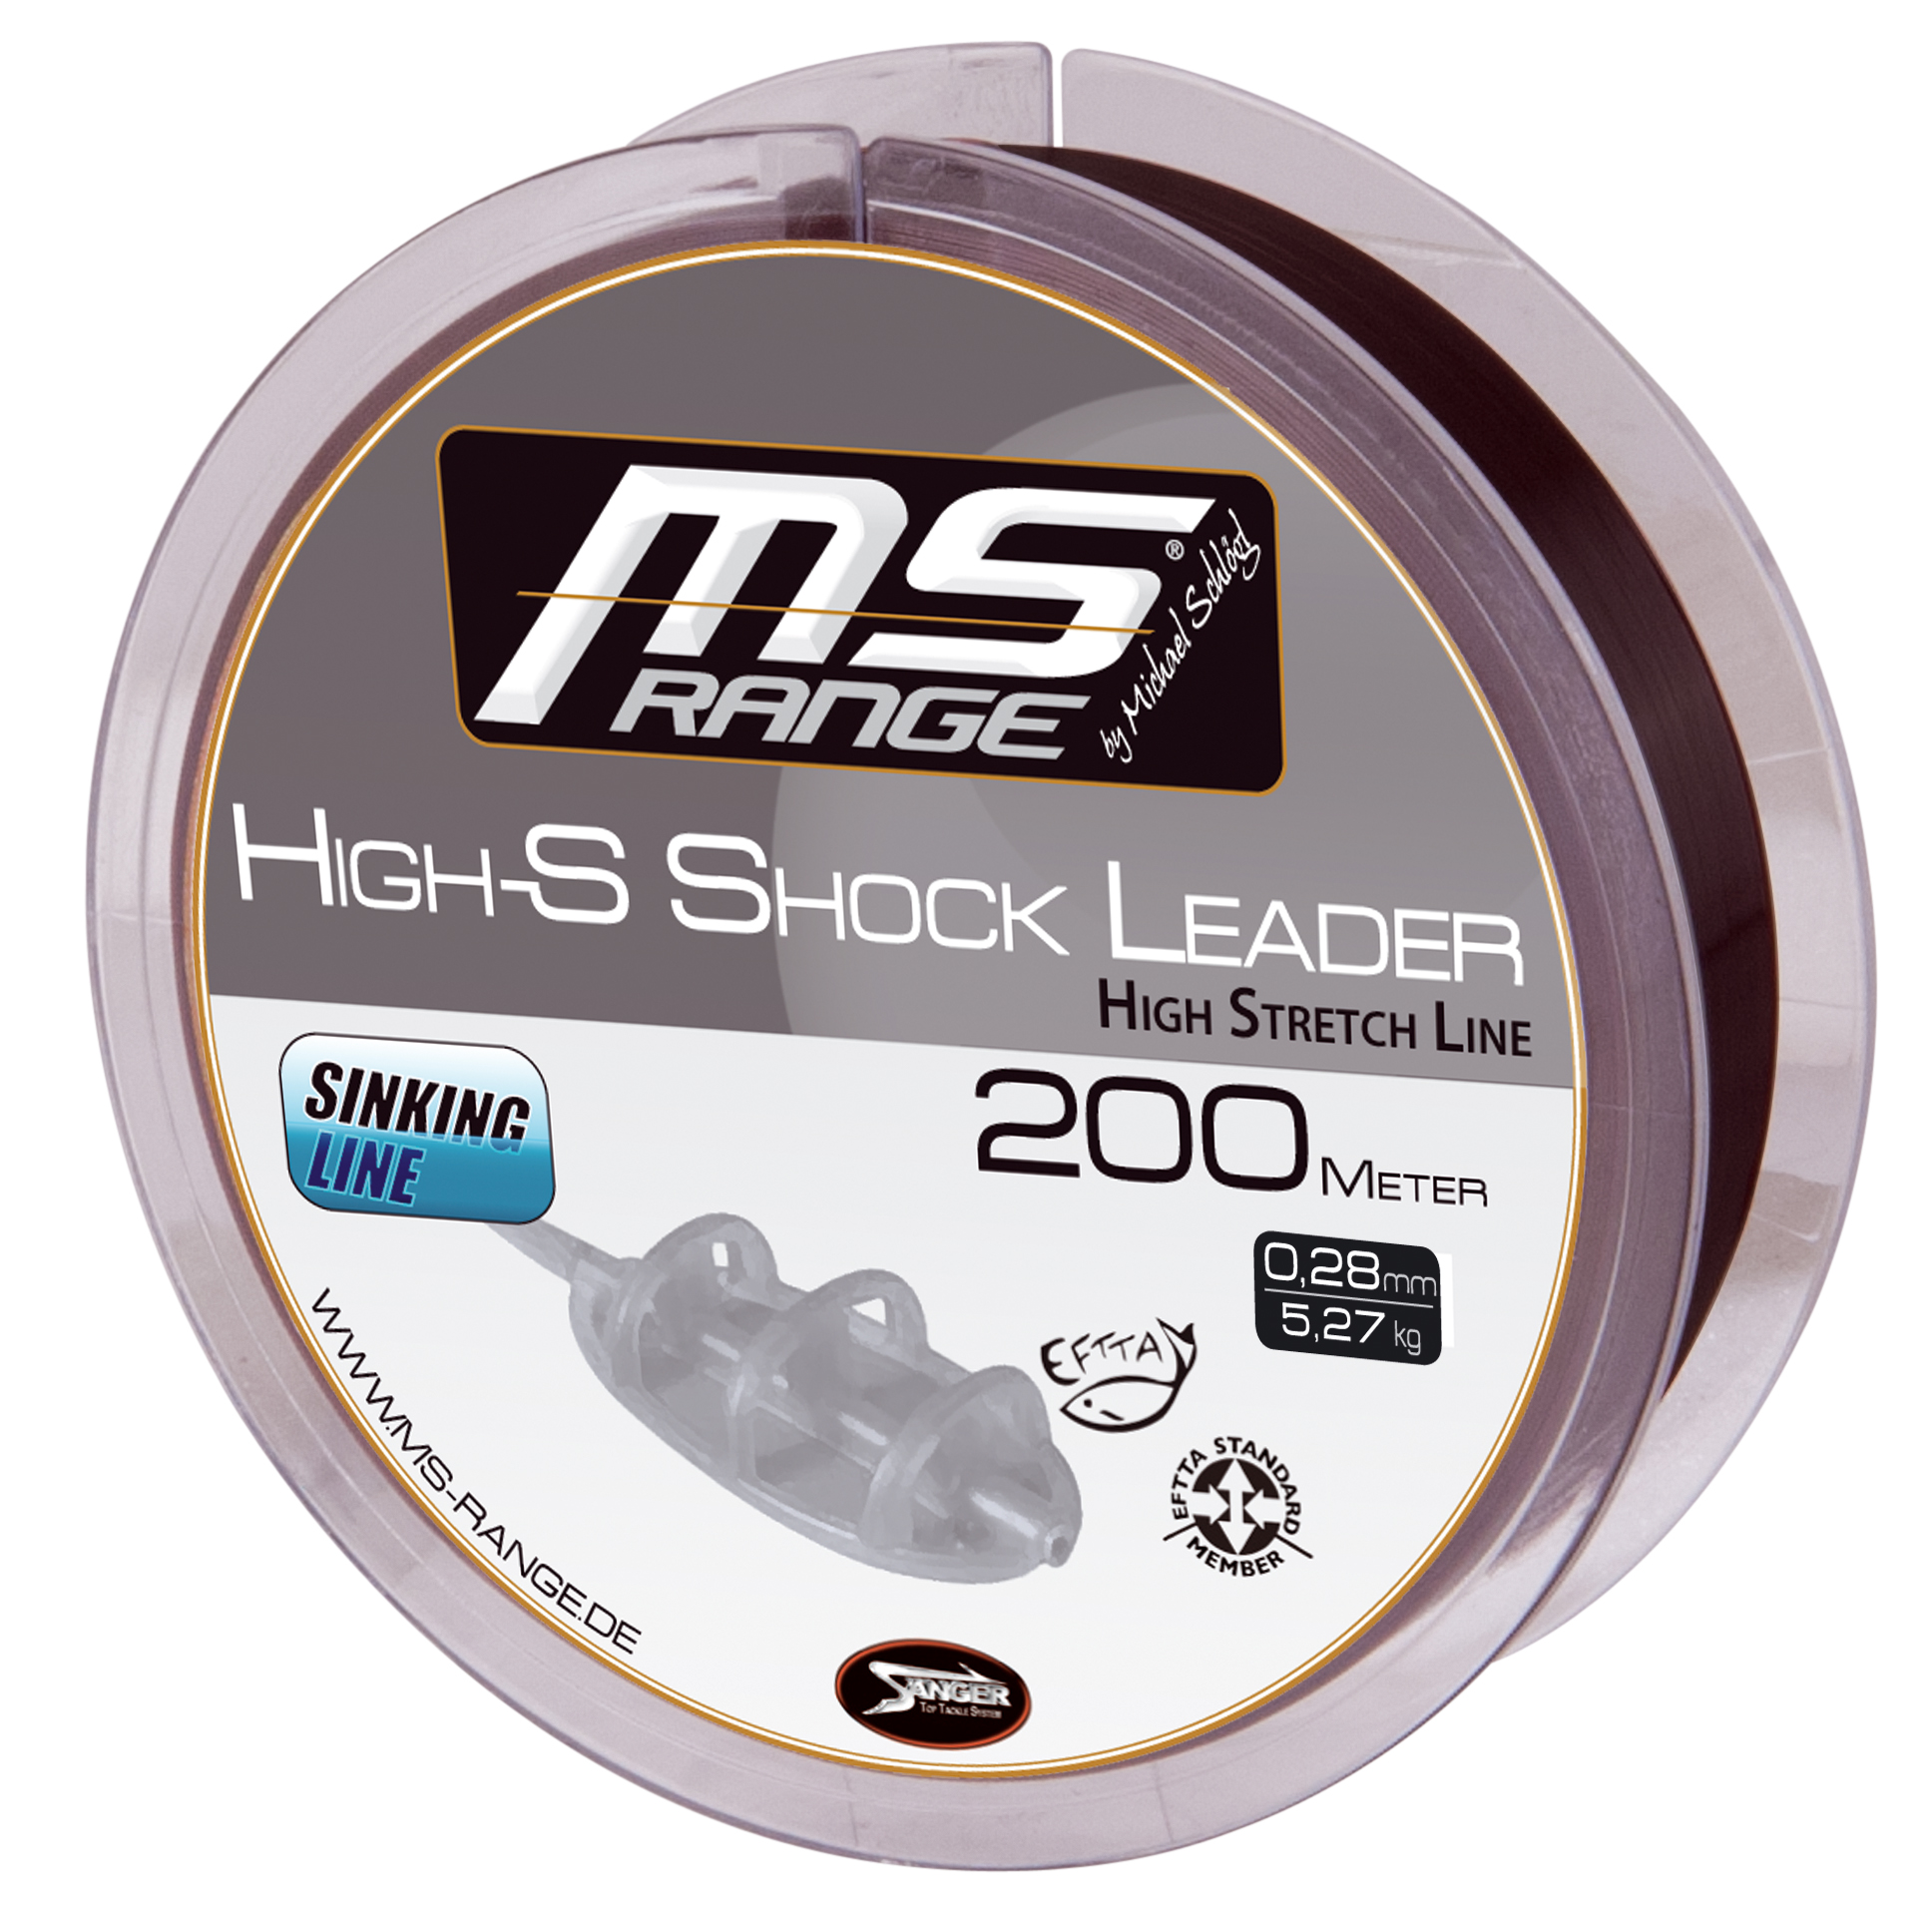 Angelschnur MS Range High-S Shock Leader 200m 0,28 mm